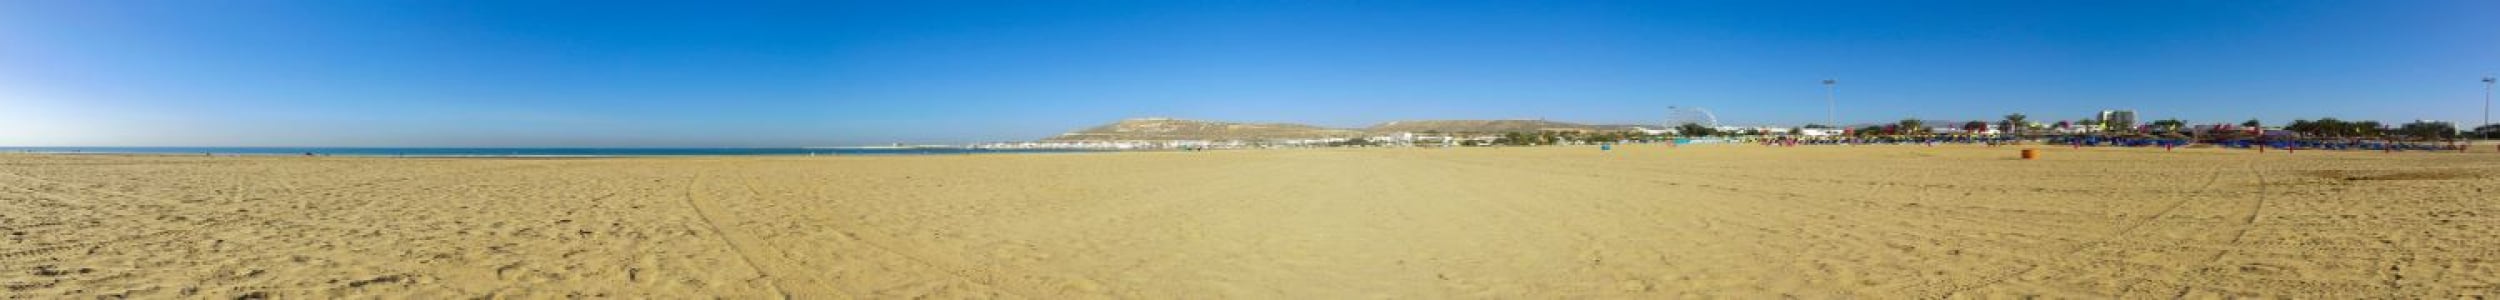 Agadir : week-end 5j/4n en appart'hôtel très bien noté + vols